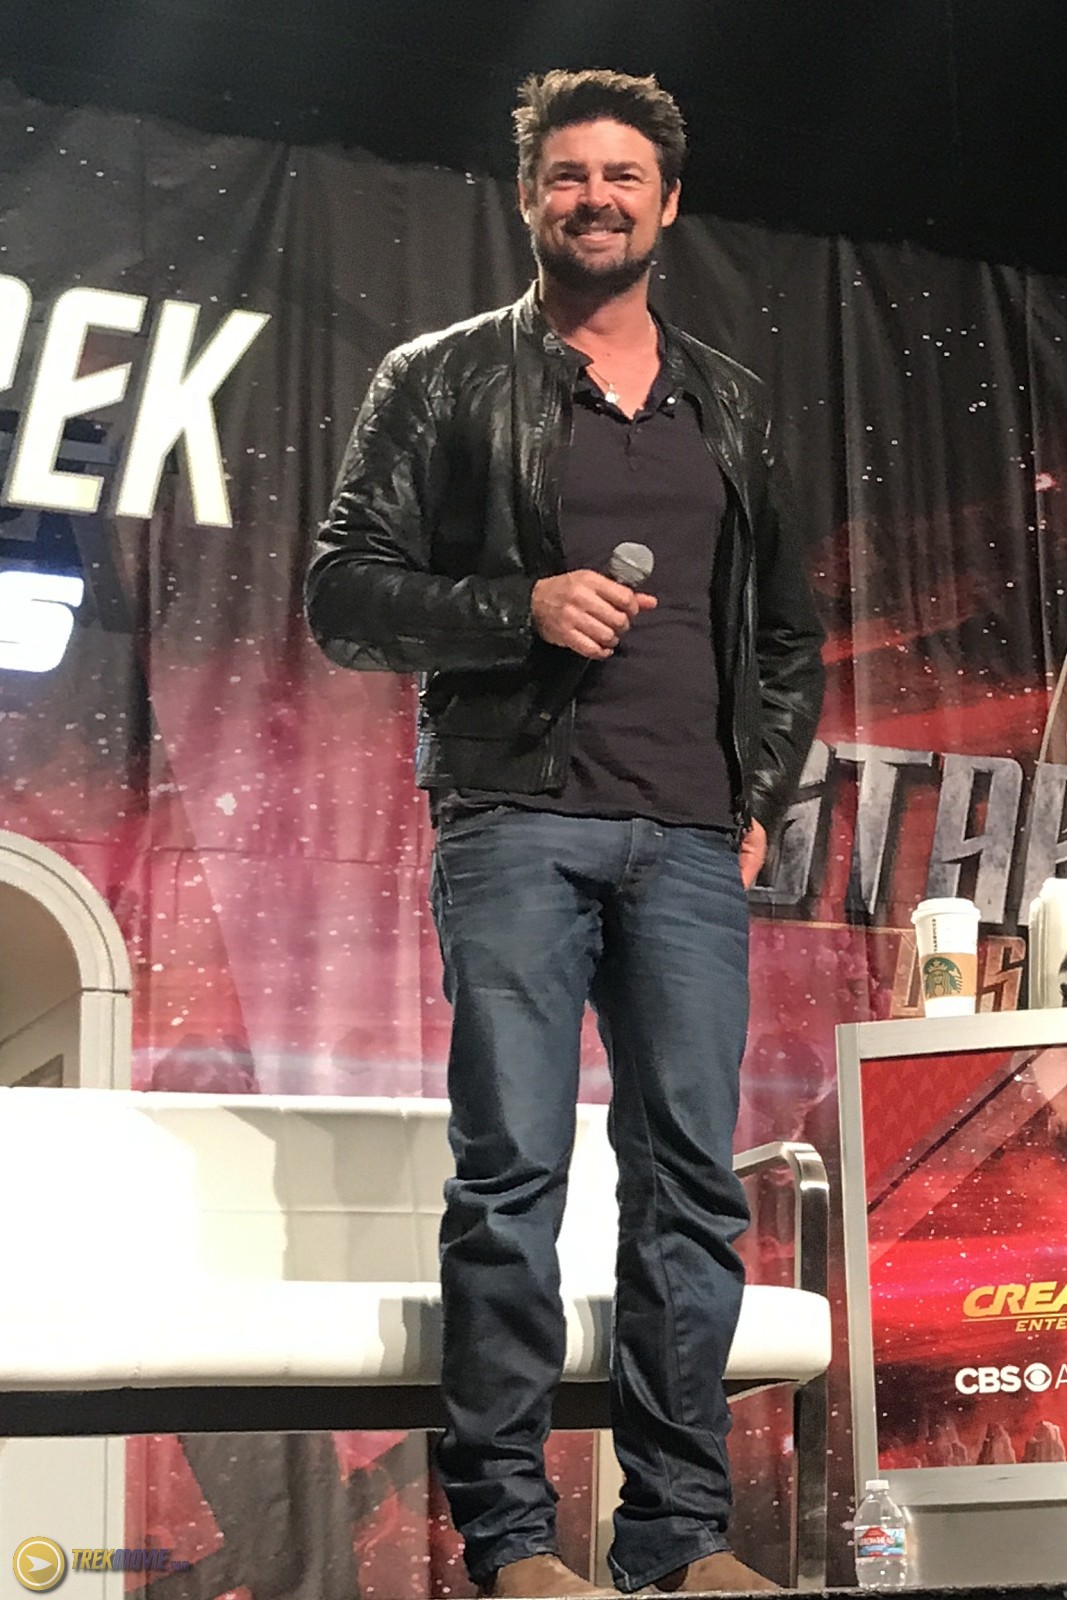 Karl Urban during 'Star Trek' promotion.